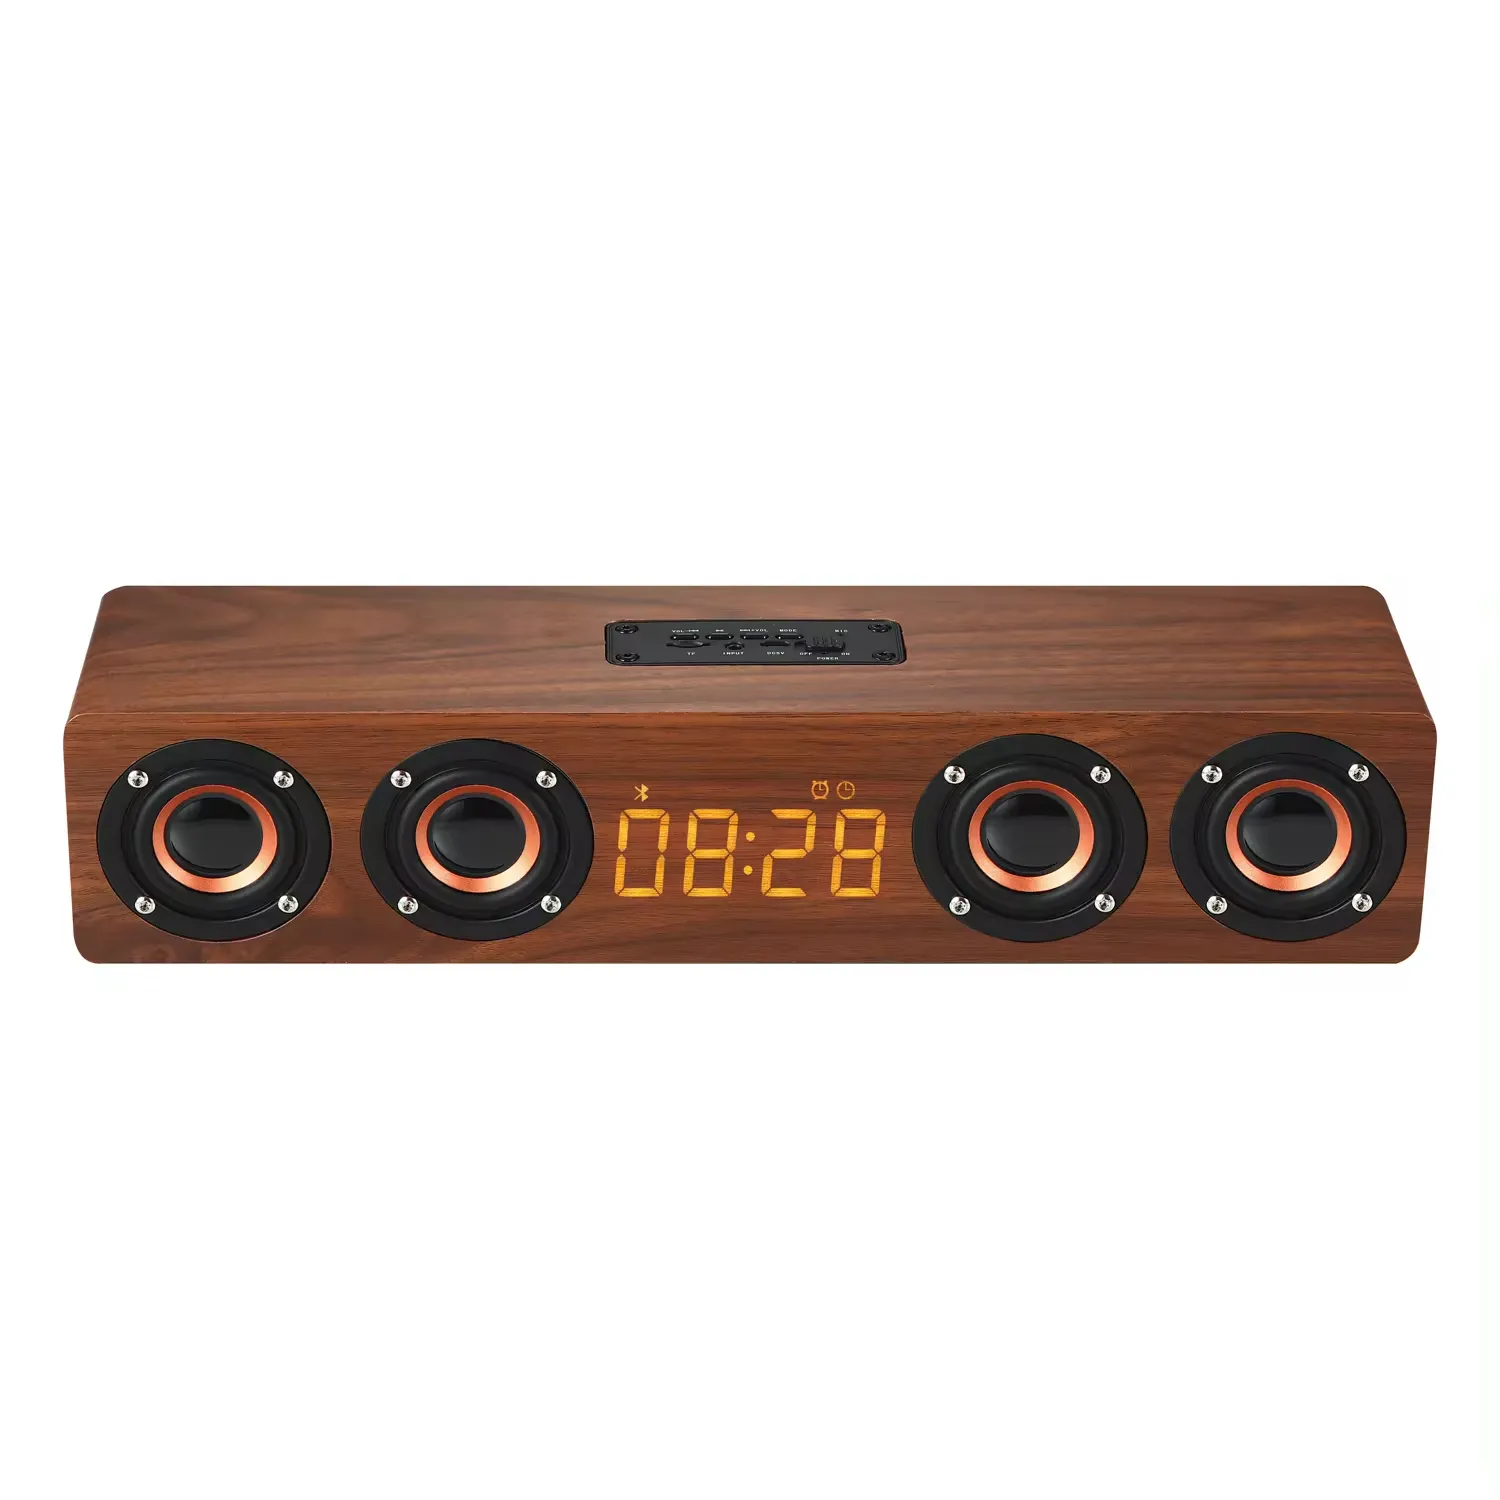 Speaker stereo retro mini kayu kualitas suara presisi tinggi, dapat terhubung ke jam alarm nirkabel Bluetooth PC/speaker TV